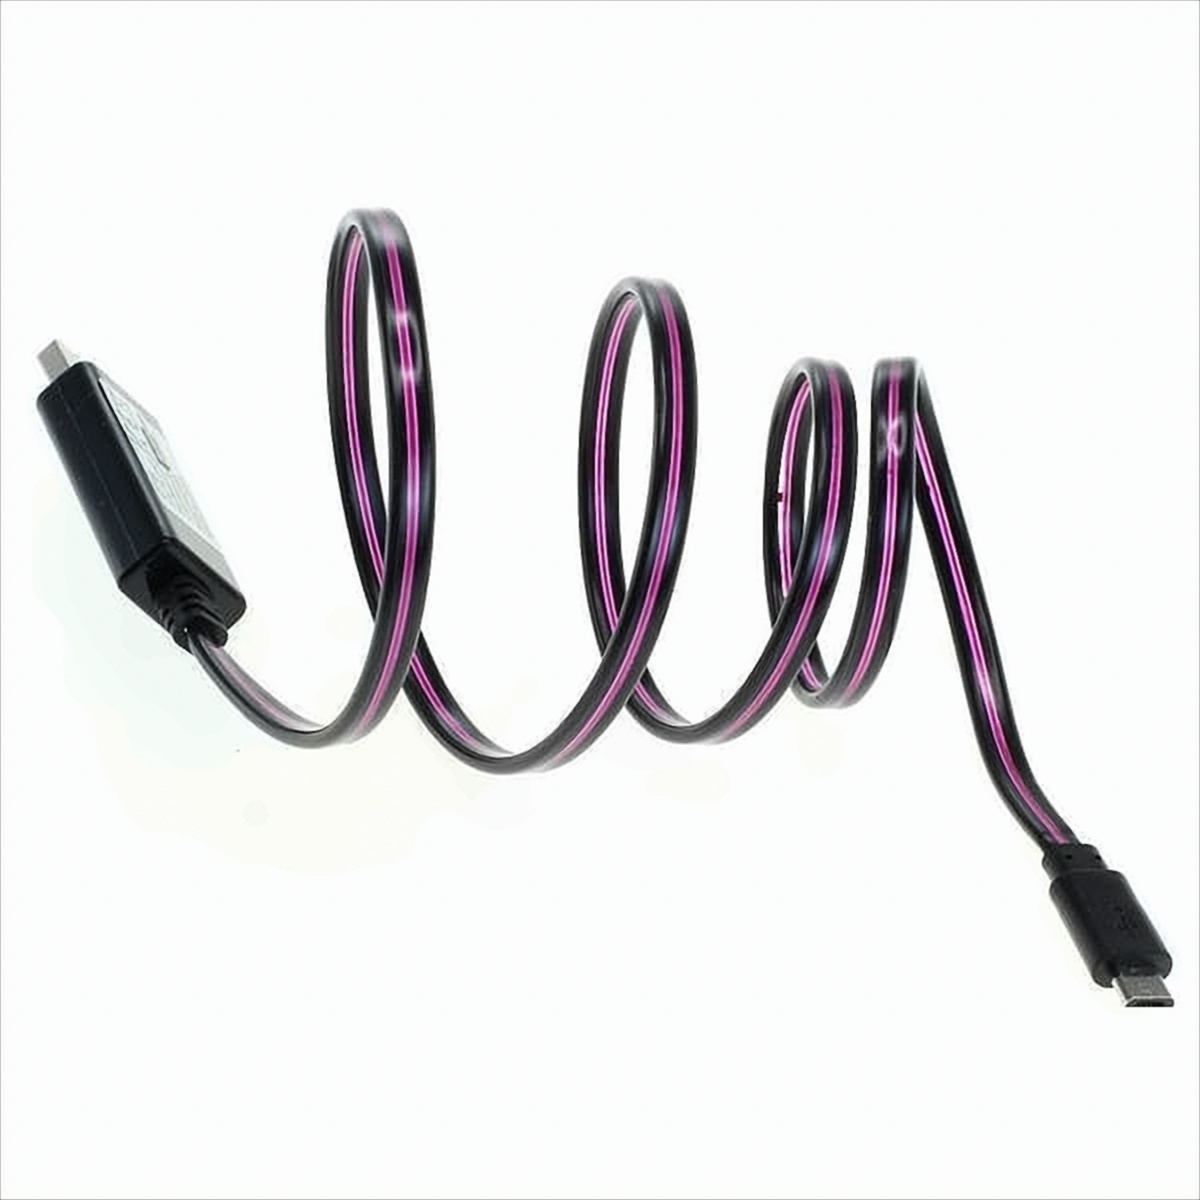 OTB Datenkabel Micro-USB mit animiertem Lauflicht - schwarz-violett von OTB